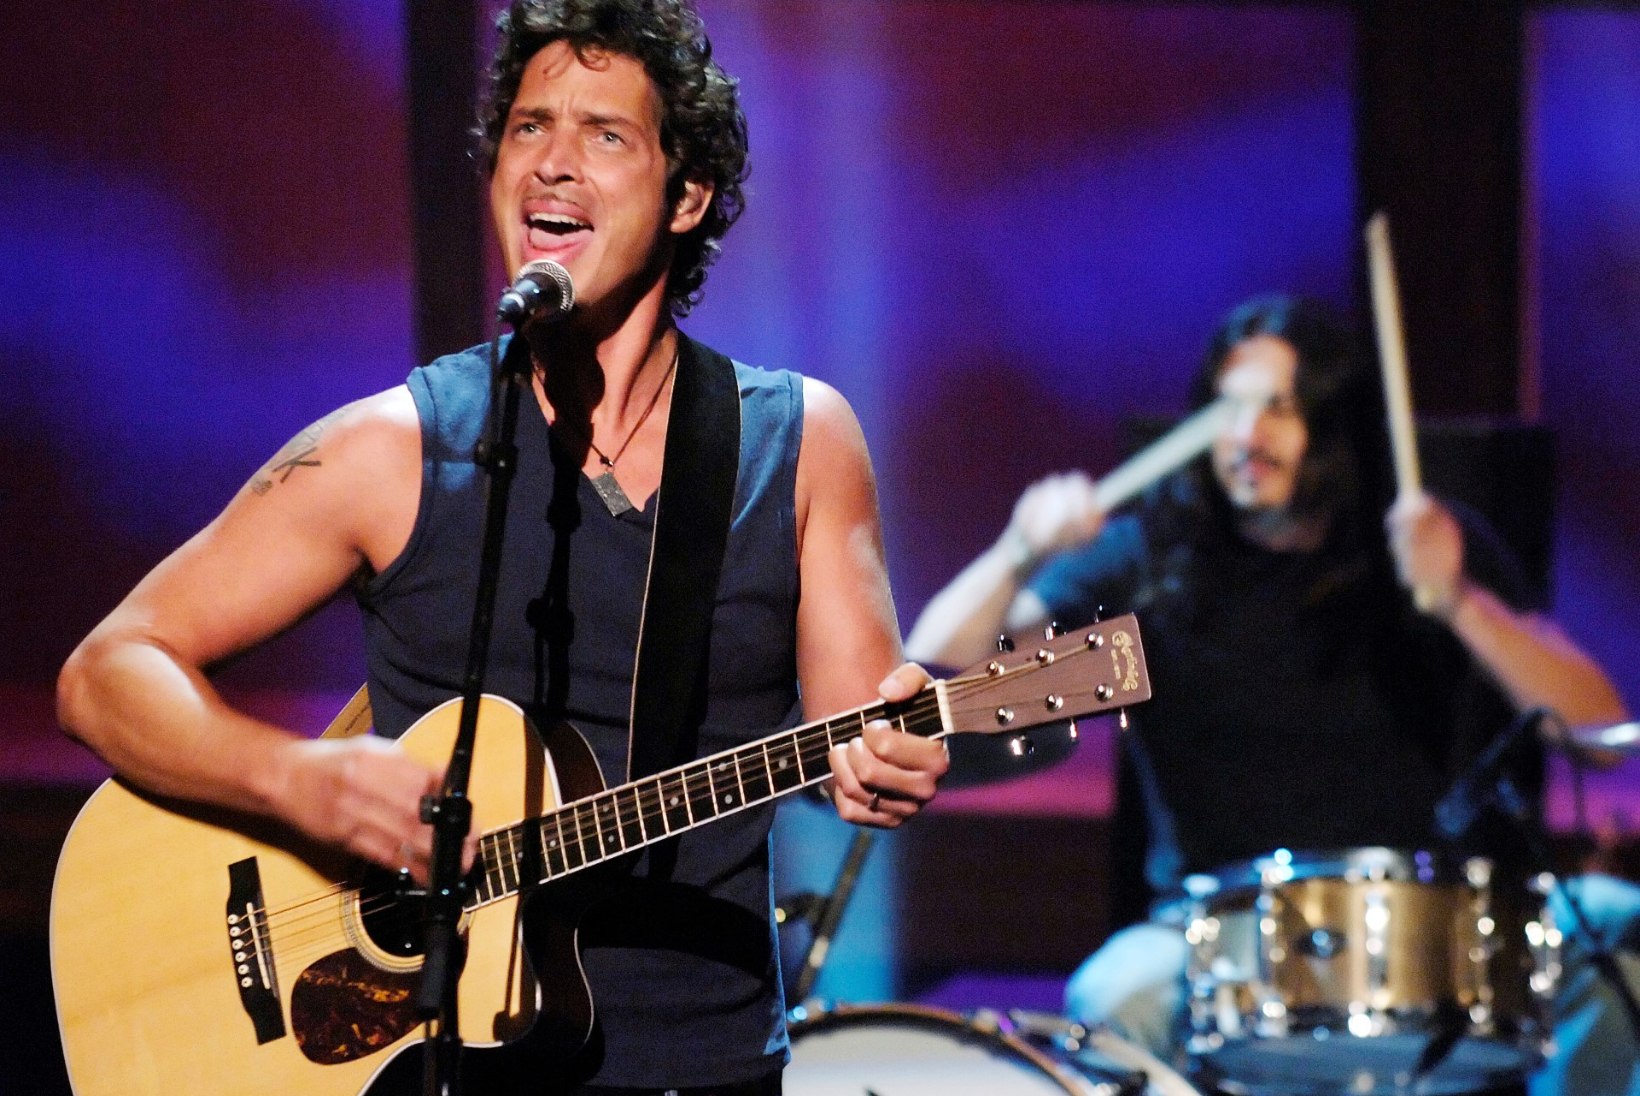 Politsei kahtlustab, et Soundgardeni solist võttis endalt ise elu